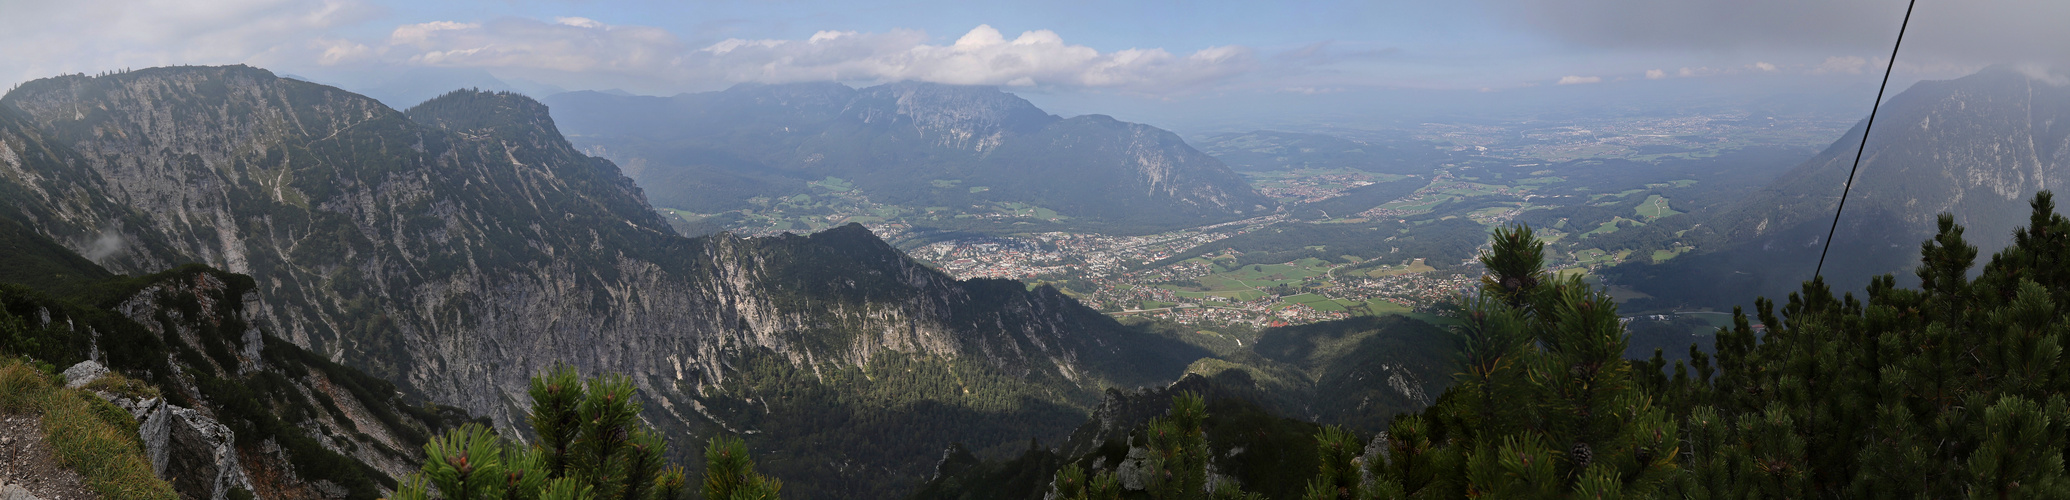 Panorama vom Dreisesselberg (2019_09_18_6721_pano_ji)